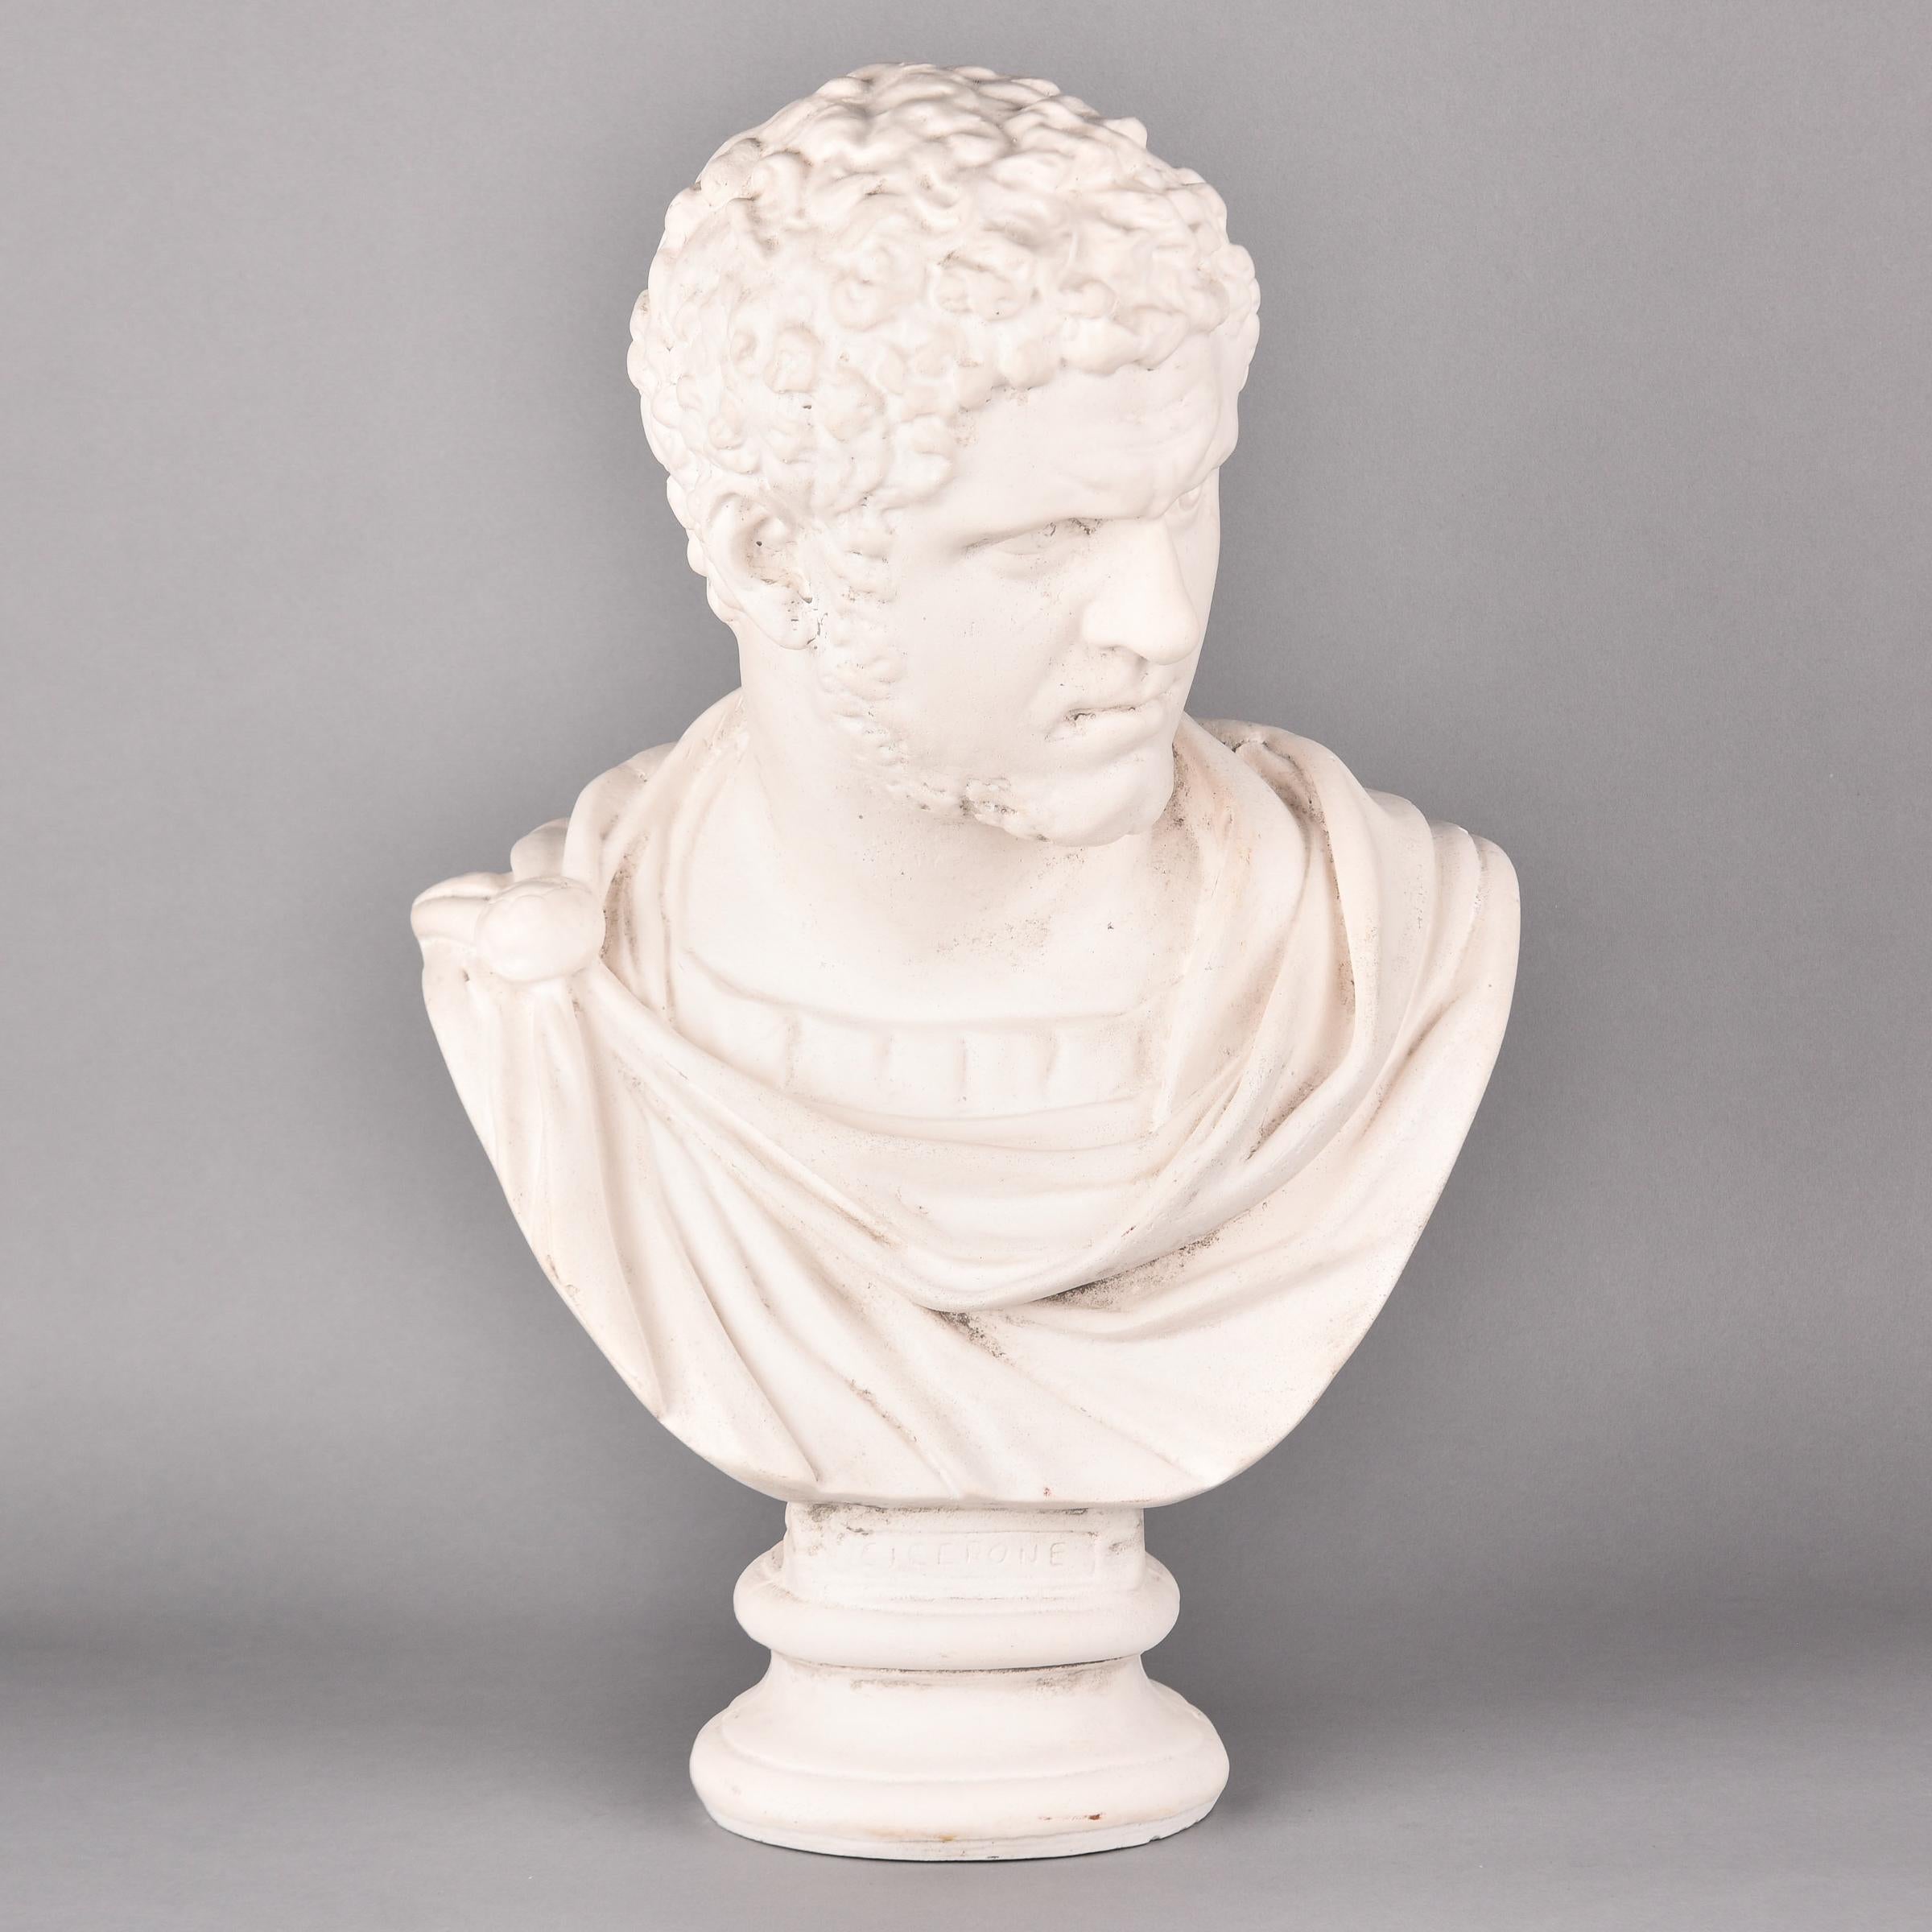 Diese alte Gipsbüste von Marcus Cicero wurde in England gefunden und stammt aus den 1980er Jahren. Die klassische römische Büste ist ein zeitloses Stück. Unbekannter Hersteller. In sehr gutem Vintage-Zustand. 